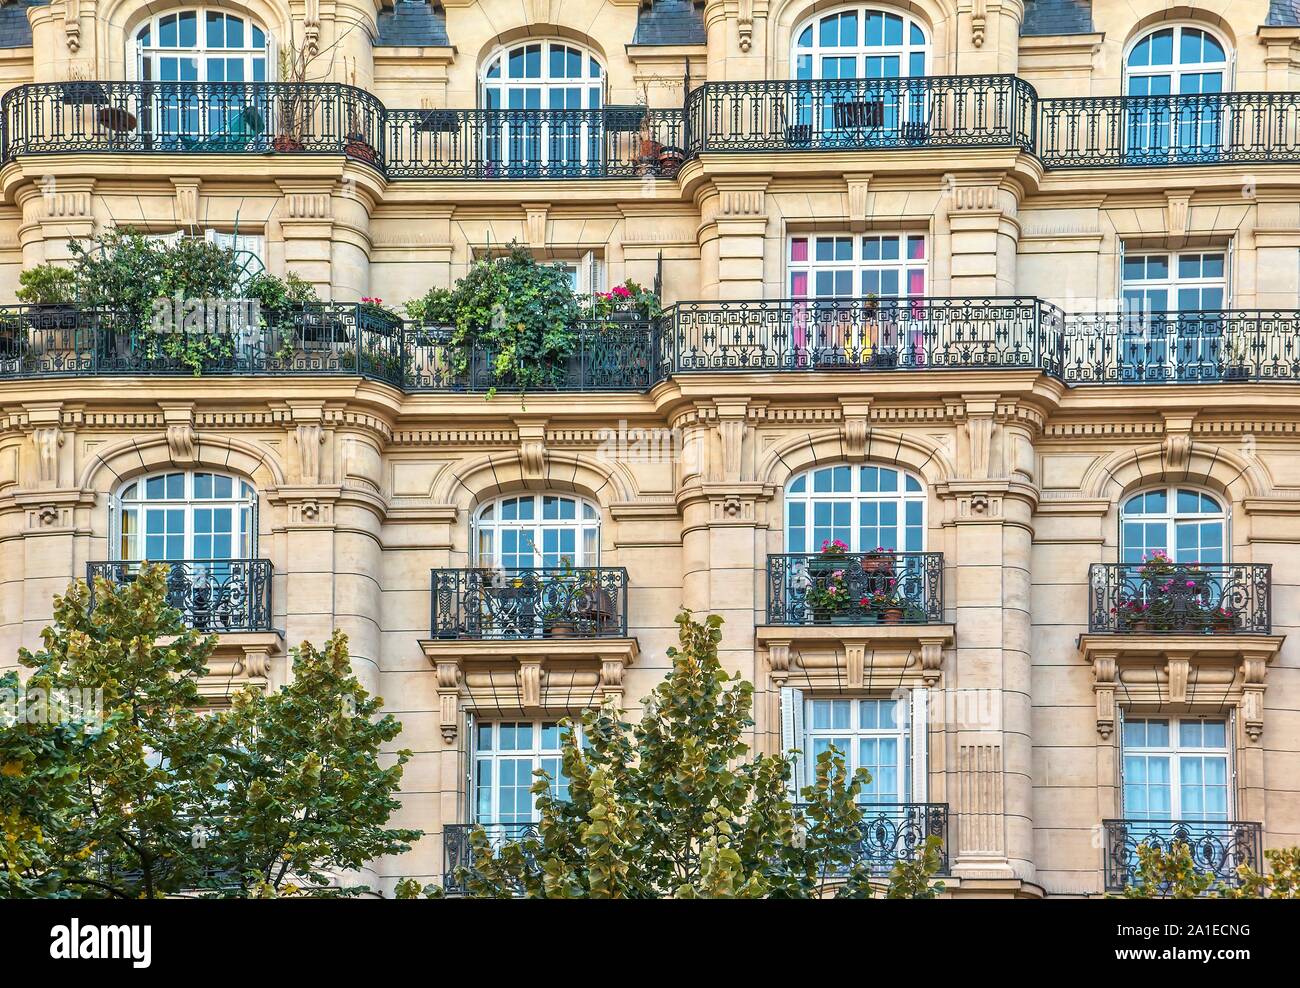 Blick auf die Straße von einem alten, eleganten Gebäude Fassade in Paris, mit kunstvollen Details in den Steinmauern und französische Fenster. Stockfoto